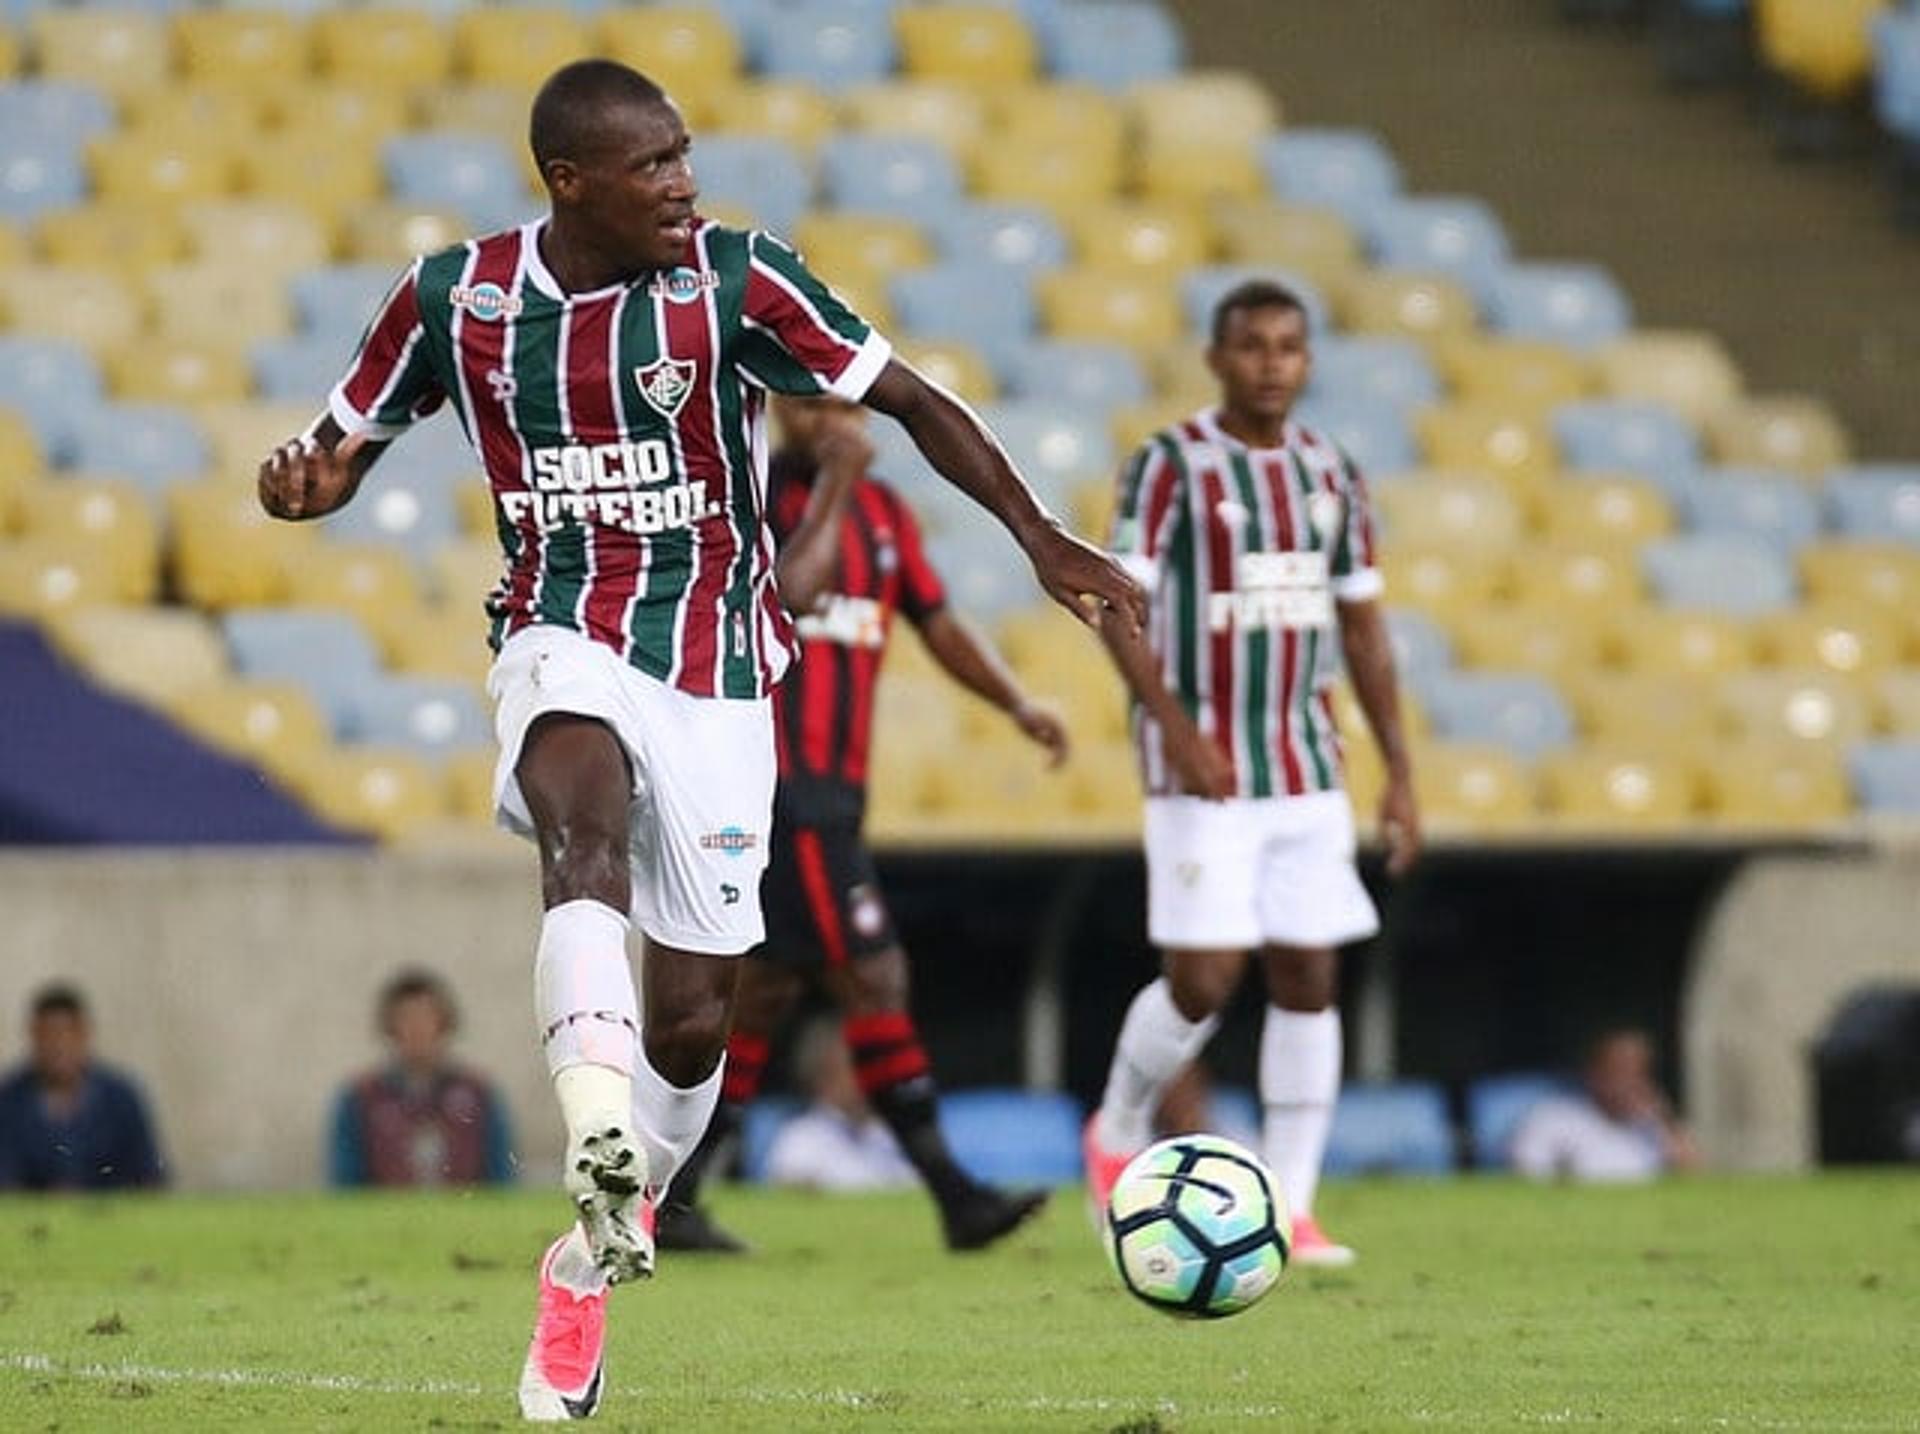 Luiz Fernando Fluminense